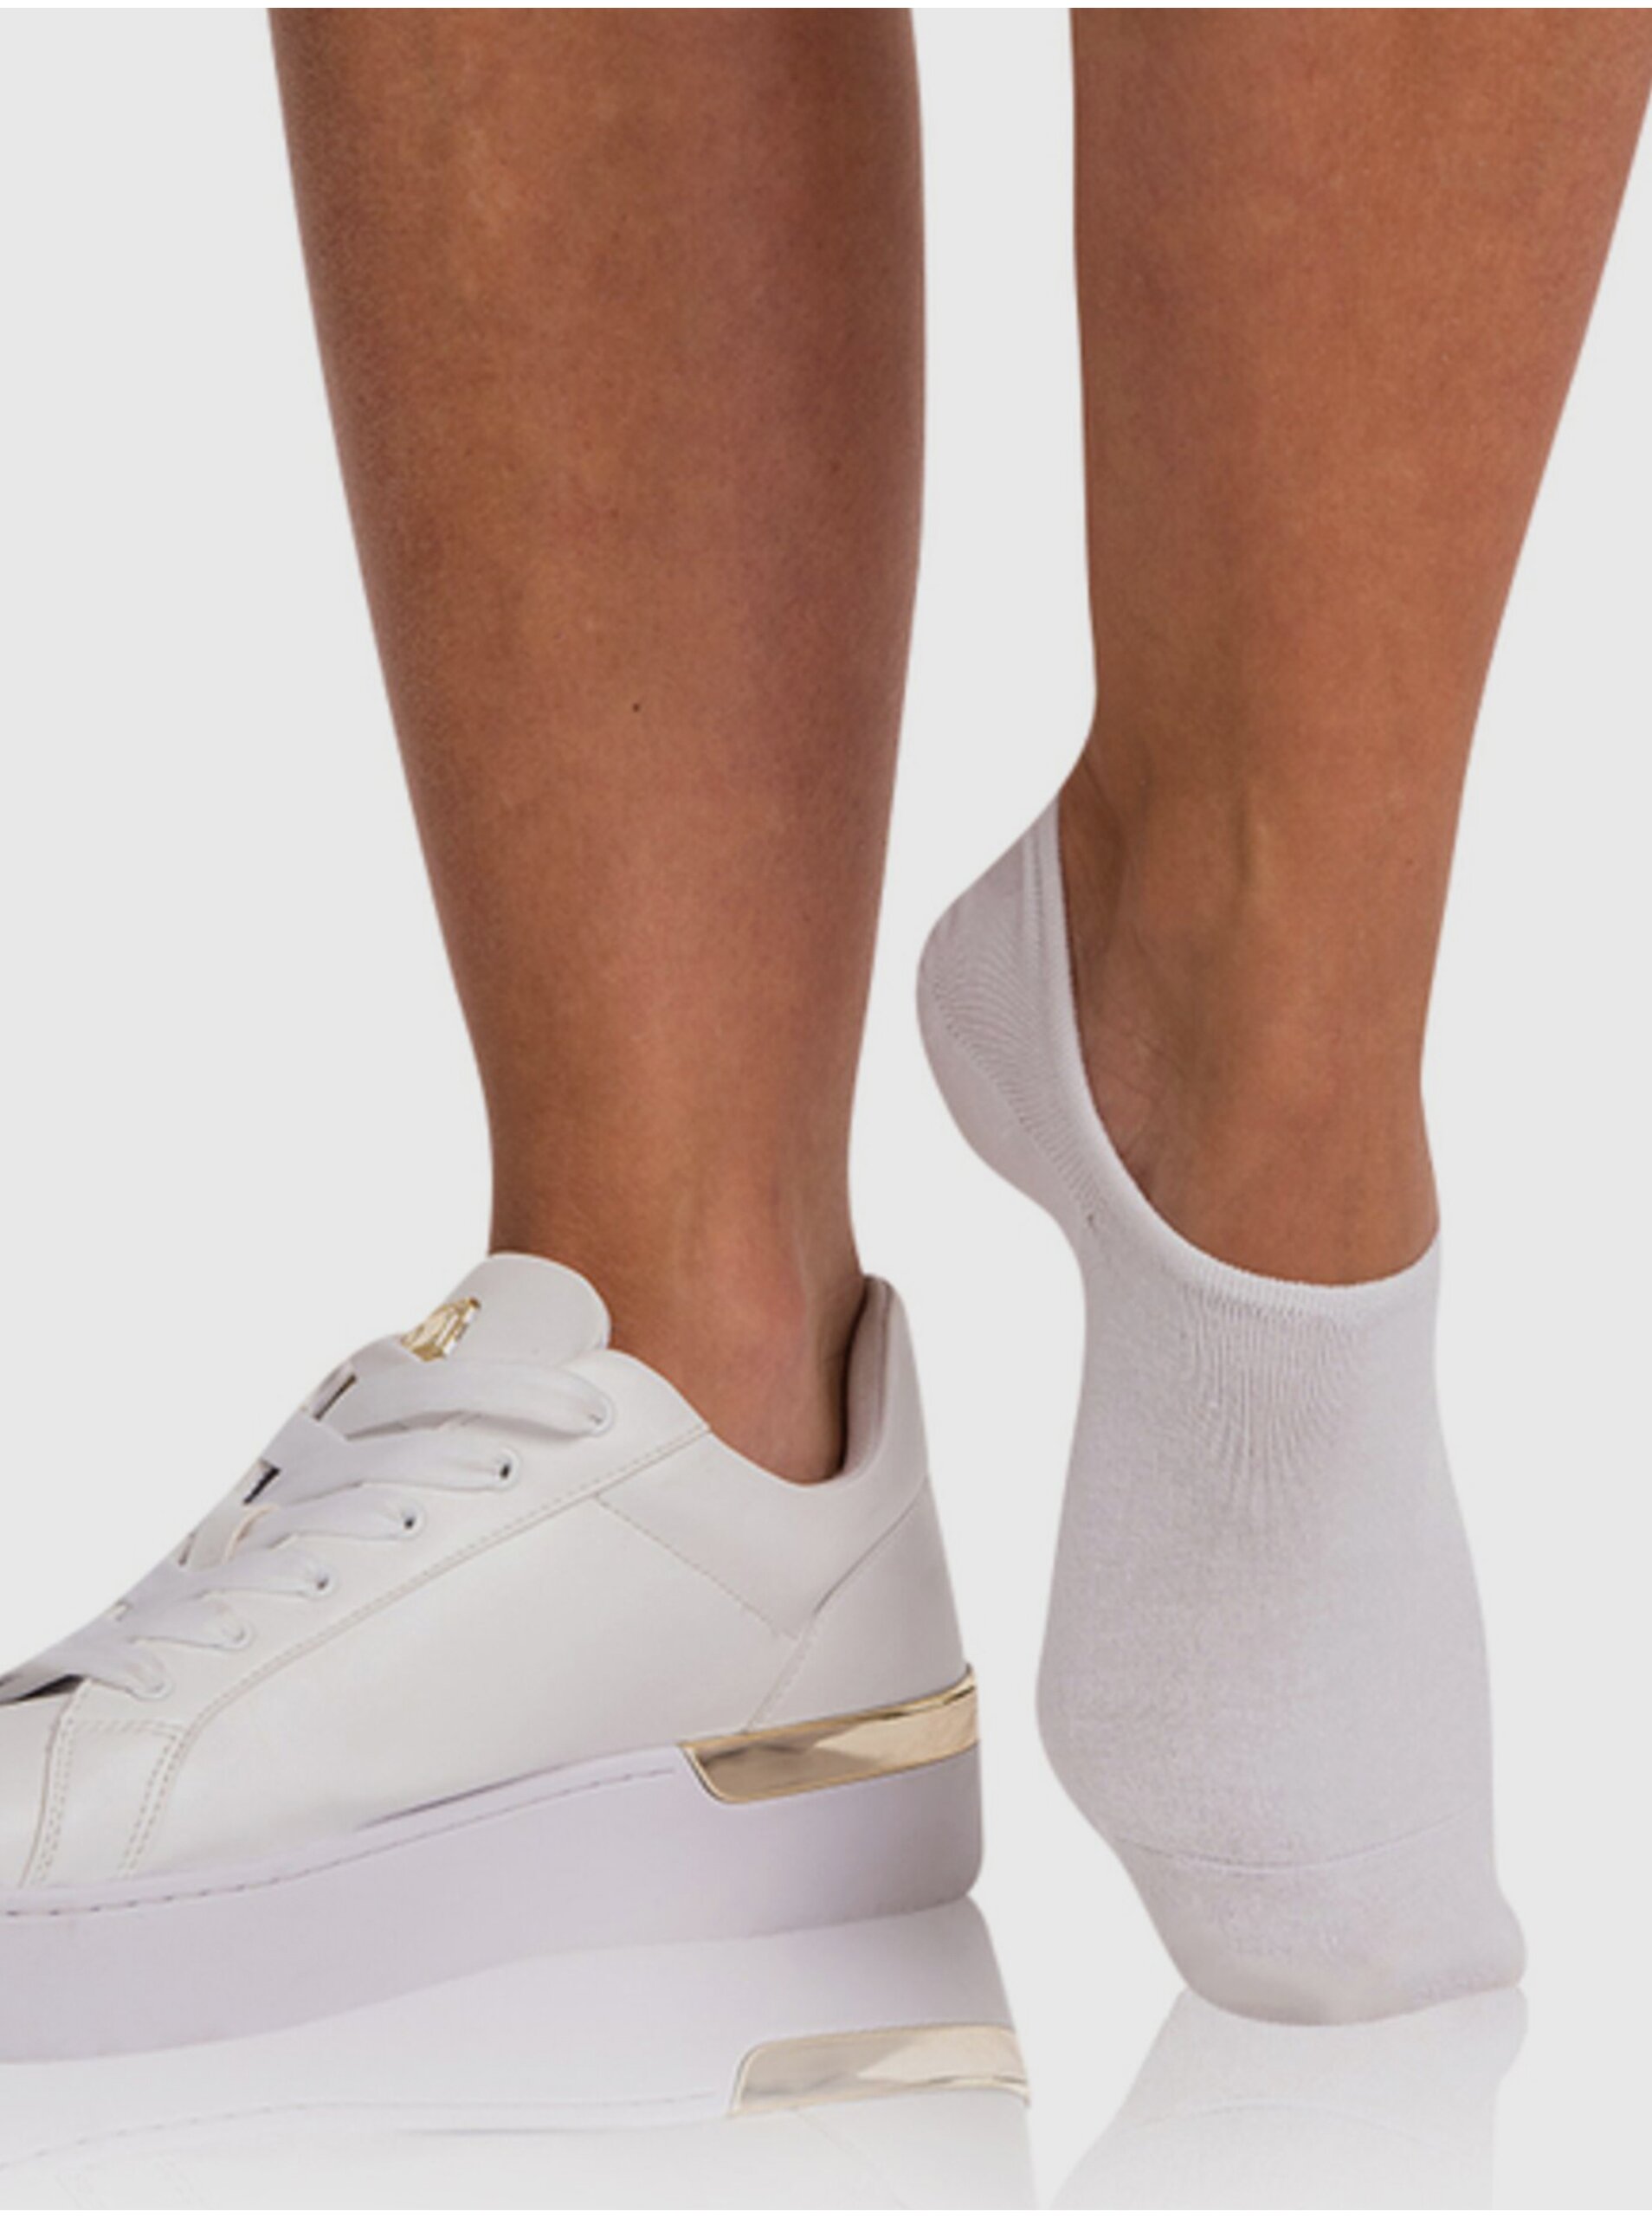 E-shop Bílé dámské bambusové velmi nízké ponožky BELLINDA Bambus Footie